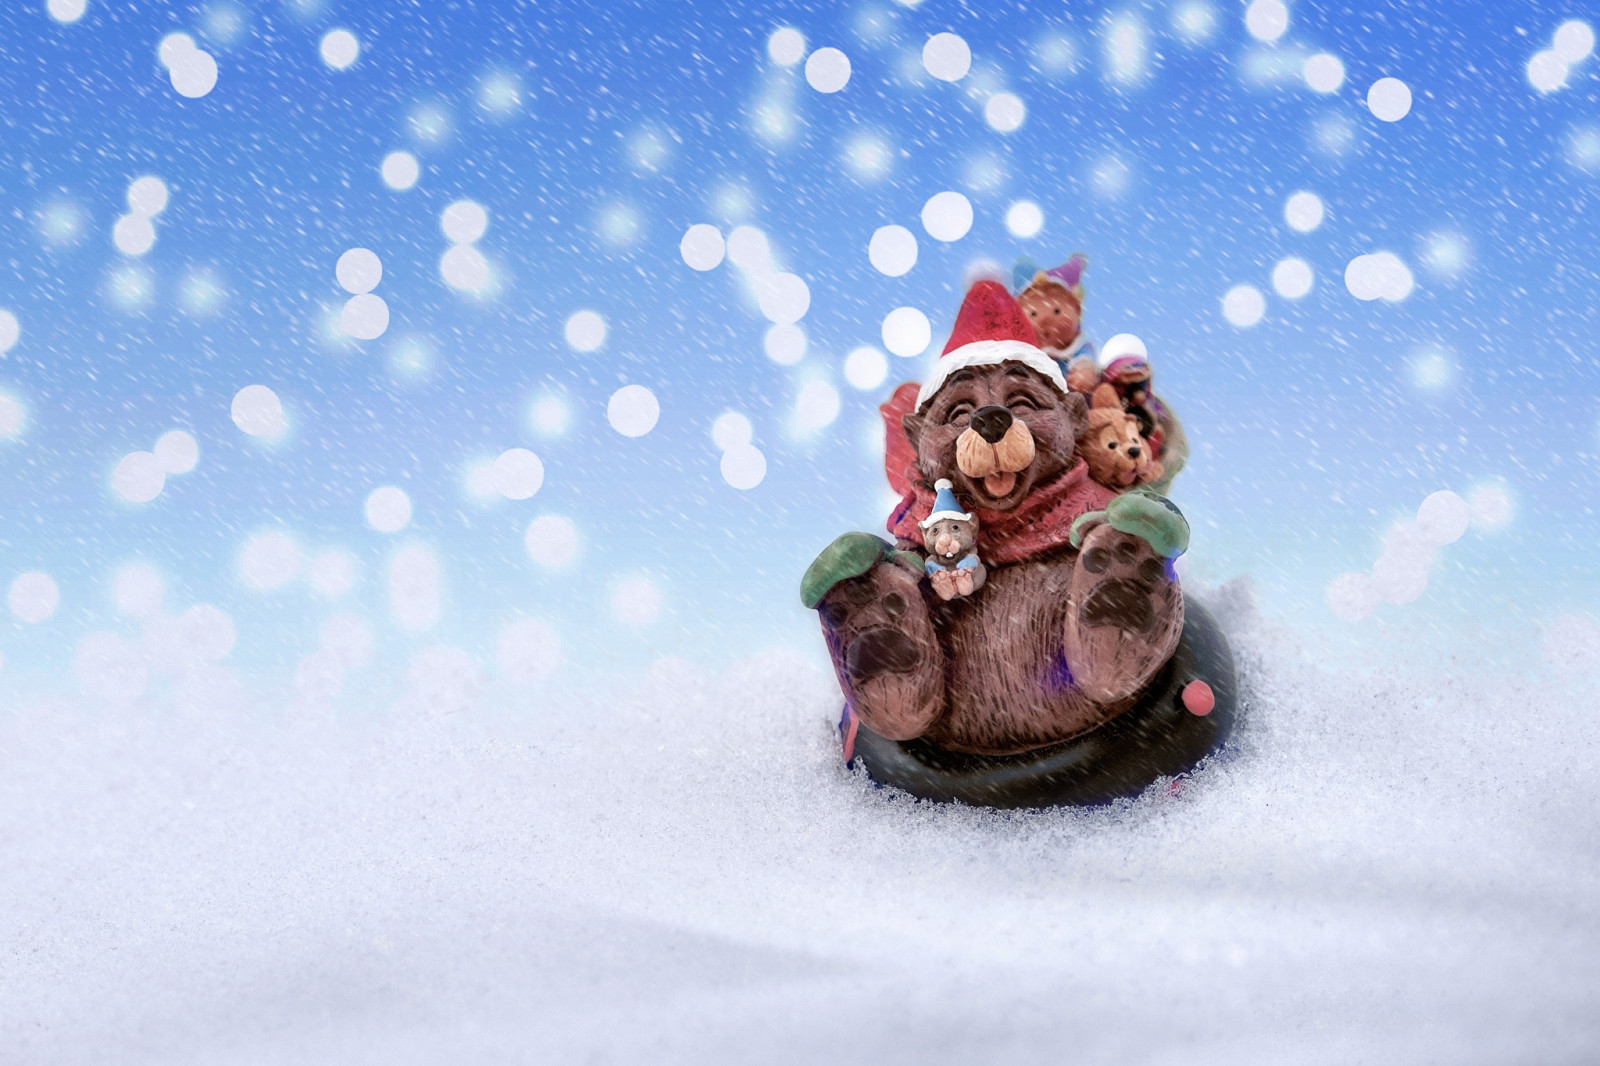 tuyết, Năm mới, Giáng sinh, Chúc mừng, chịu, Giáng sinh, chuột, vui vẻ